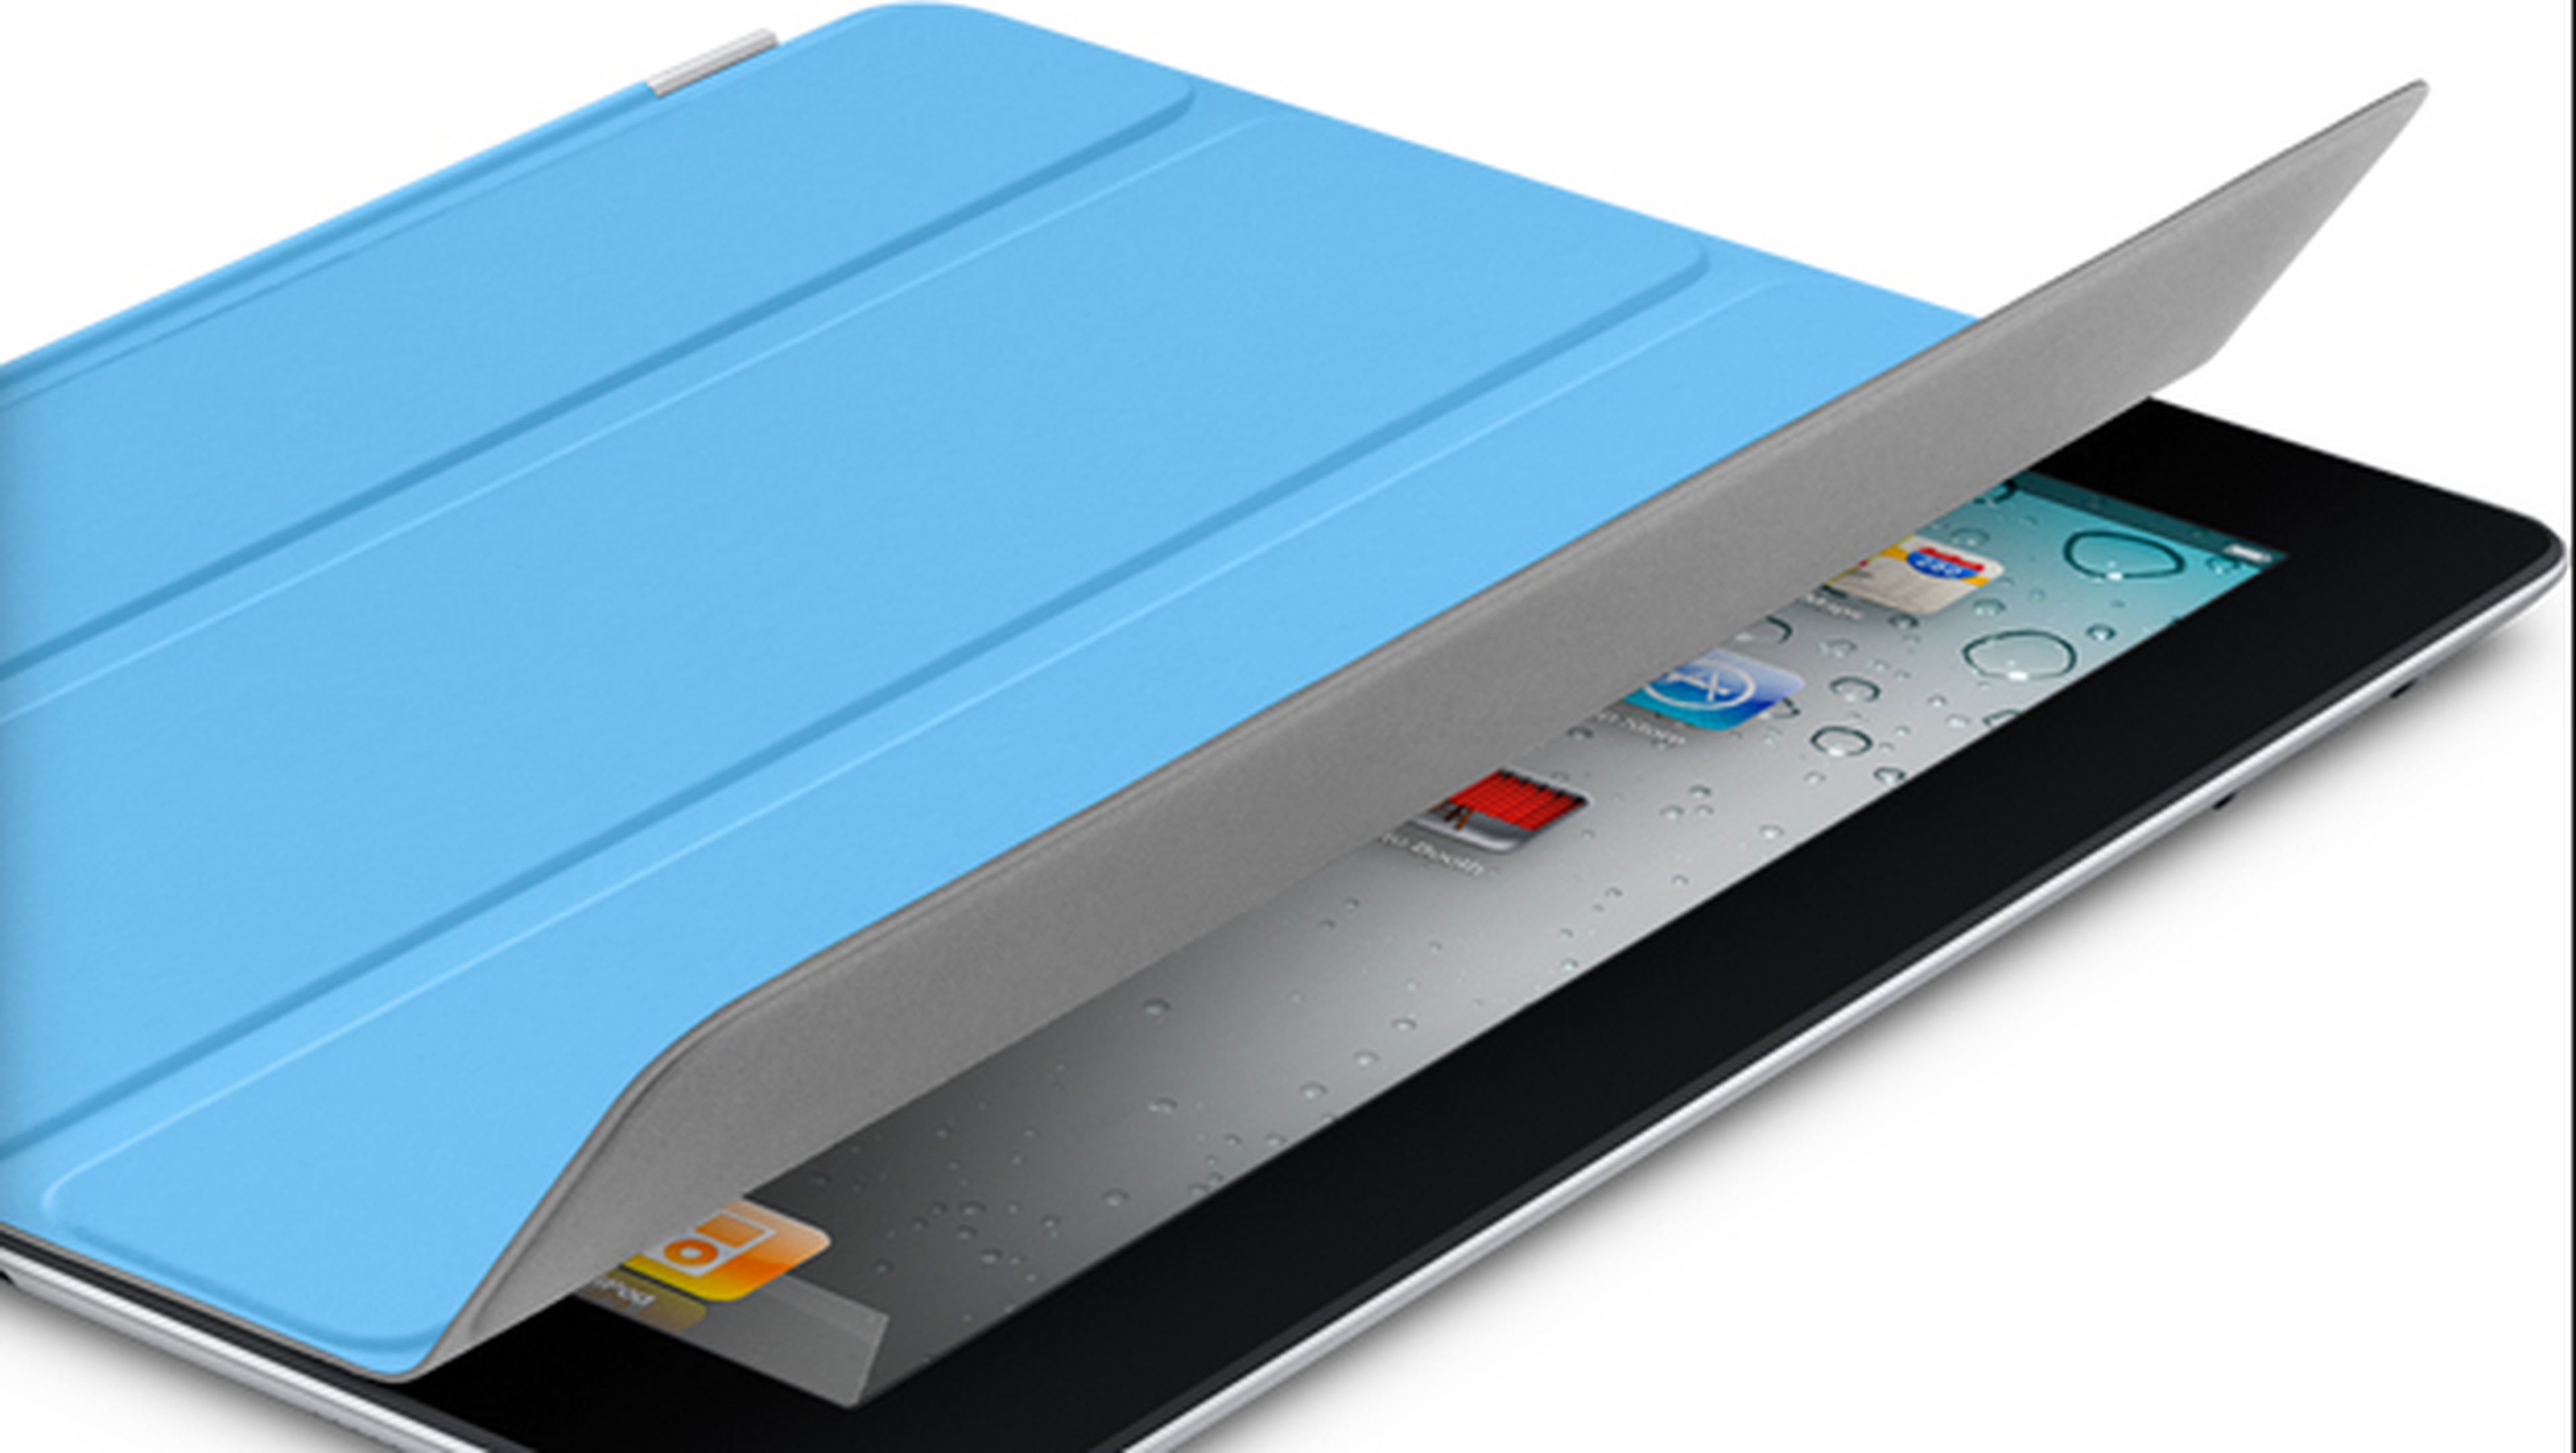 patente apple ipad smartcover